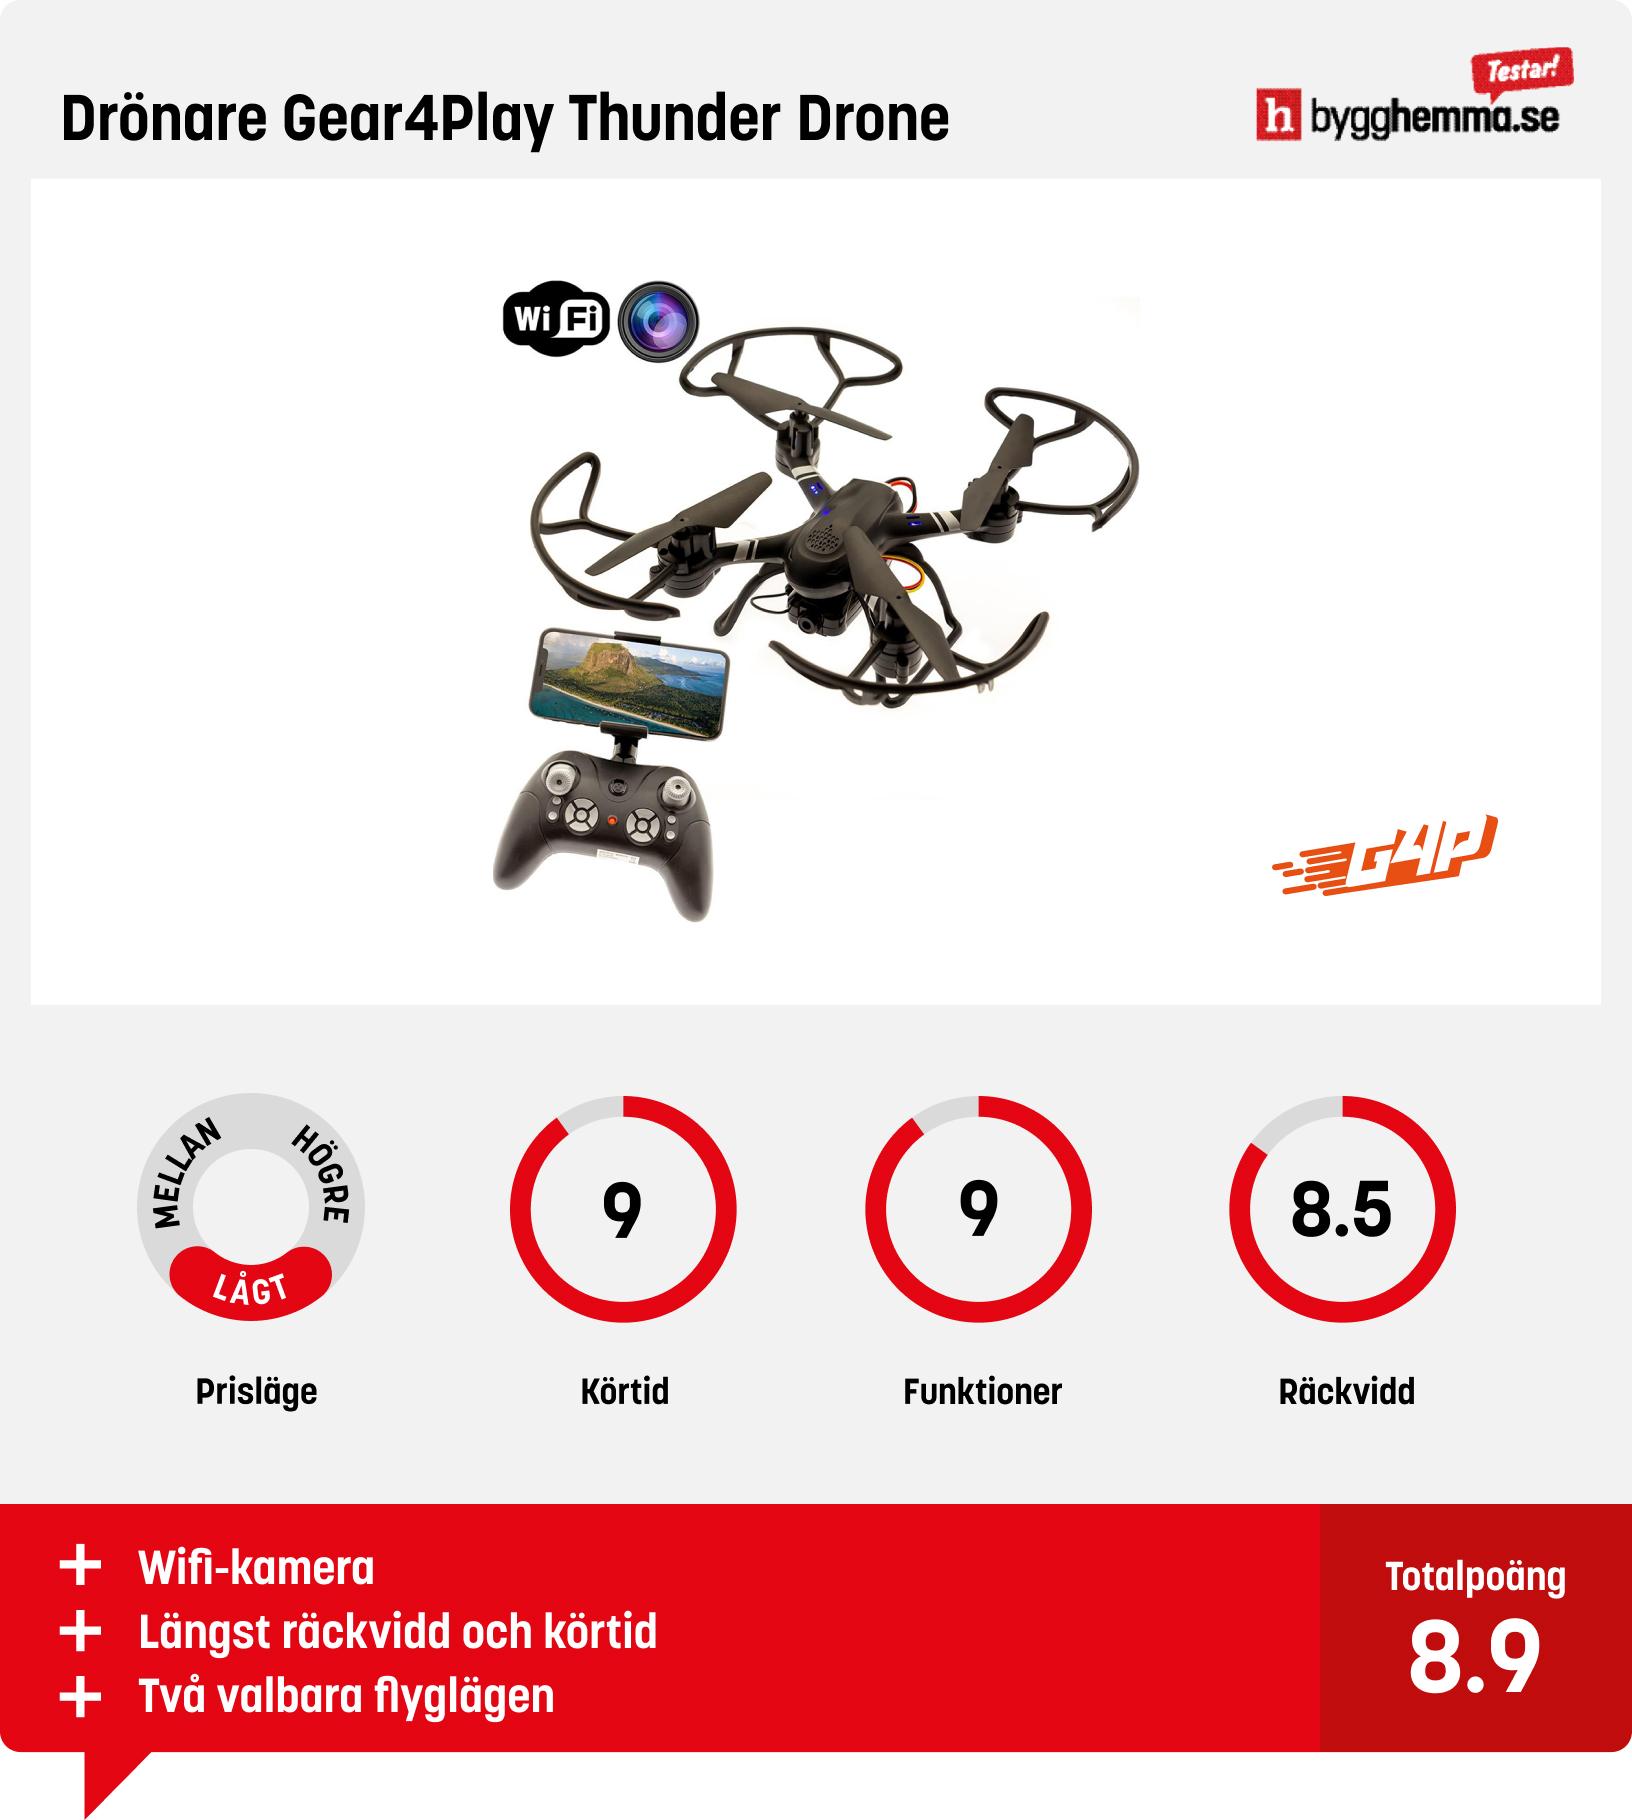 Drönare bäst i test budget - Drönare Gear4Play Thunder Drone